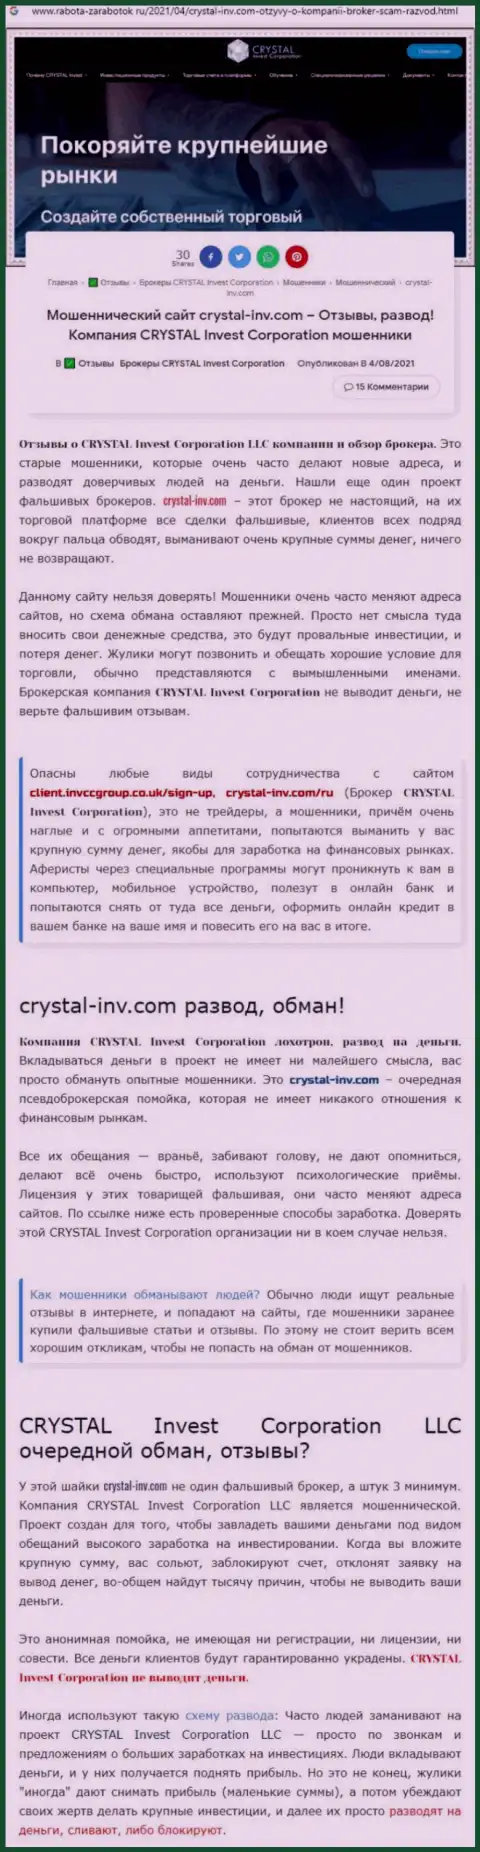 Материал, разоблачающий организацию Crystal-Inv Com, который взят с веб-сервиса с обзорами проделок различных организаций